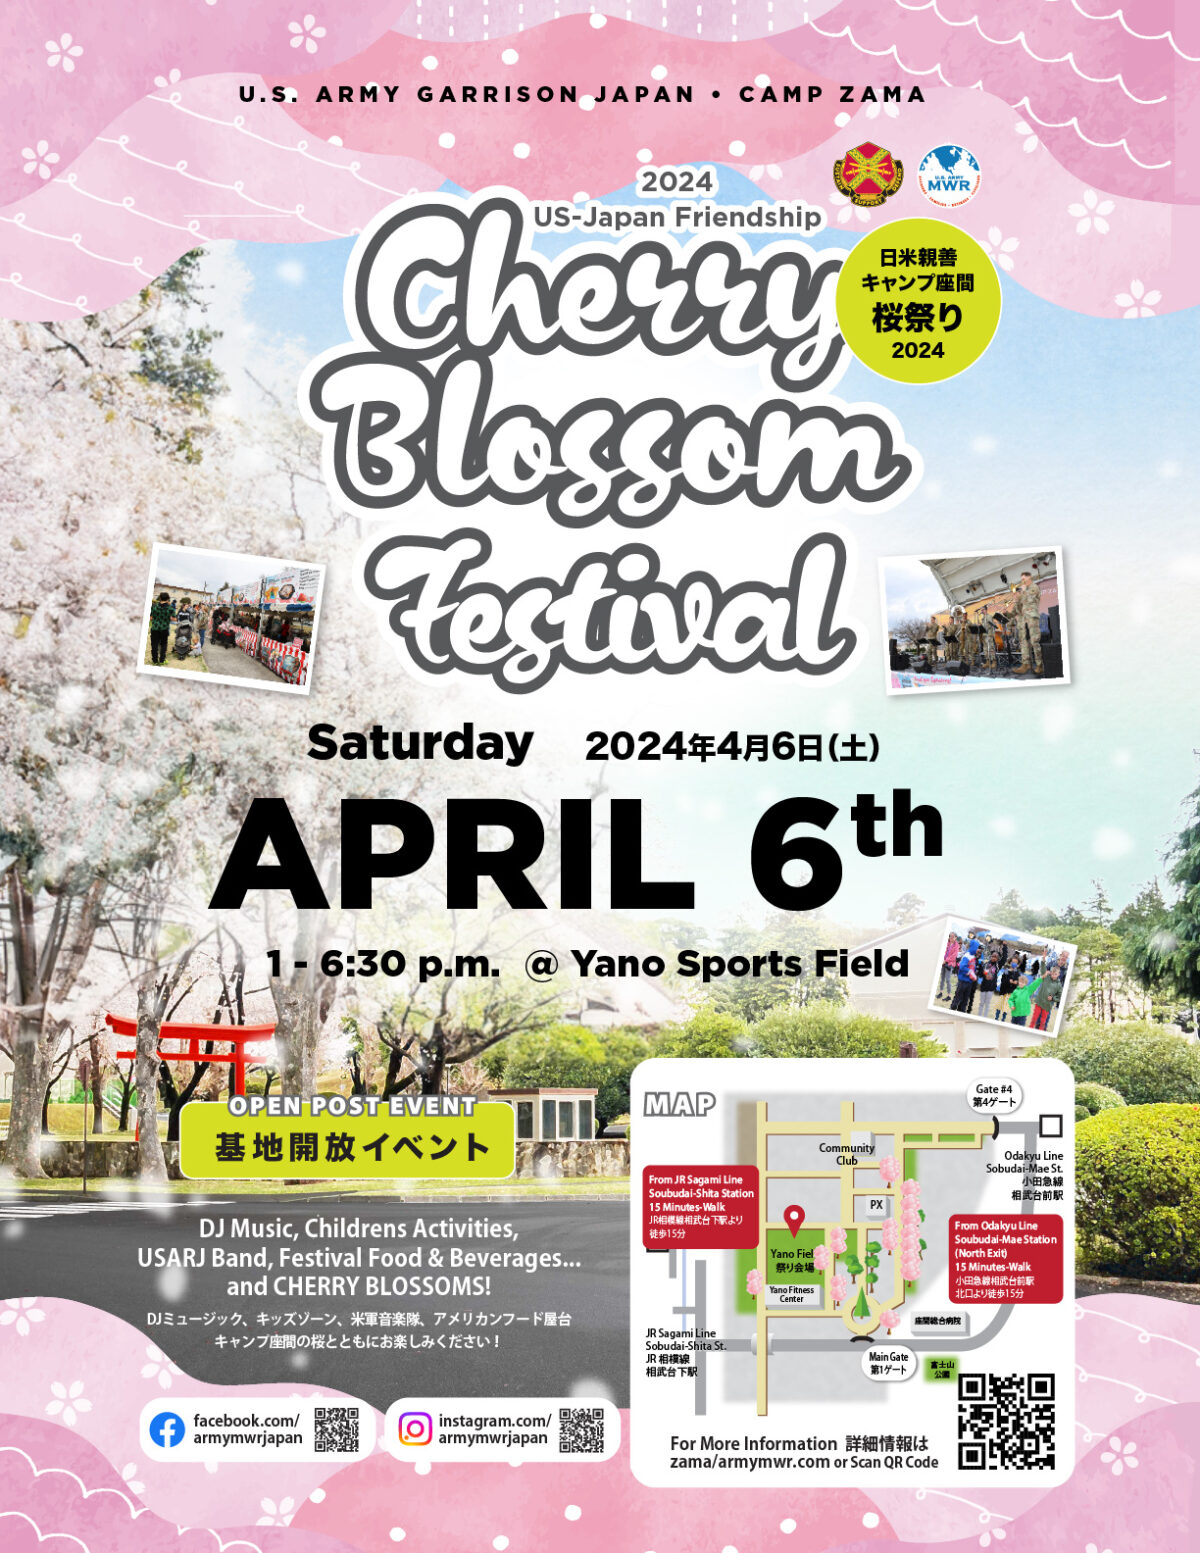 2024年4月6日(土) キャンプ座間 桜まつり Cherry Blossom Festival (米軍基地開放)